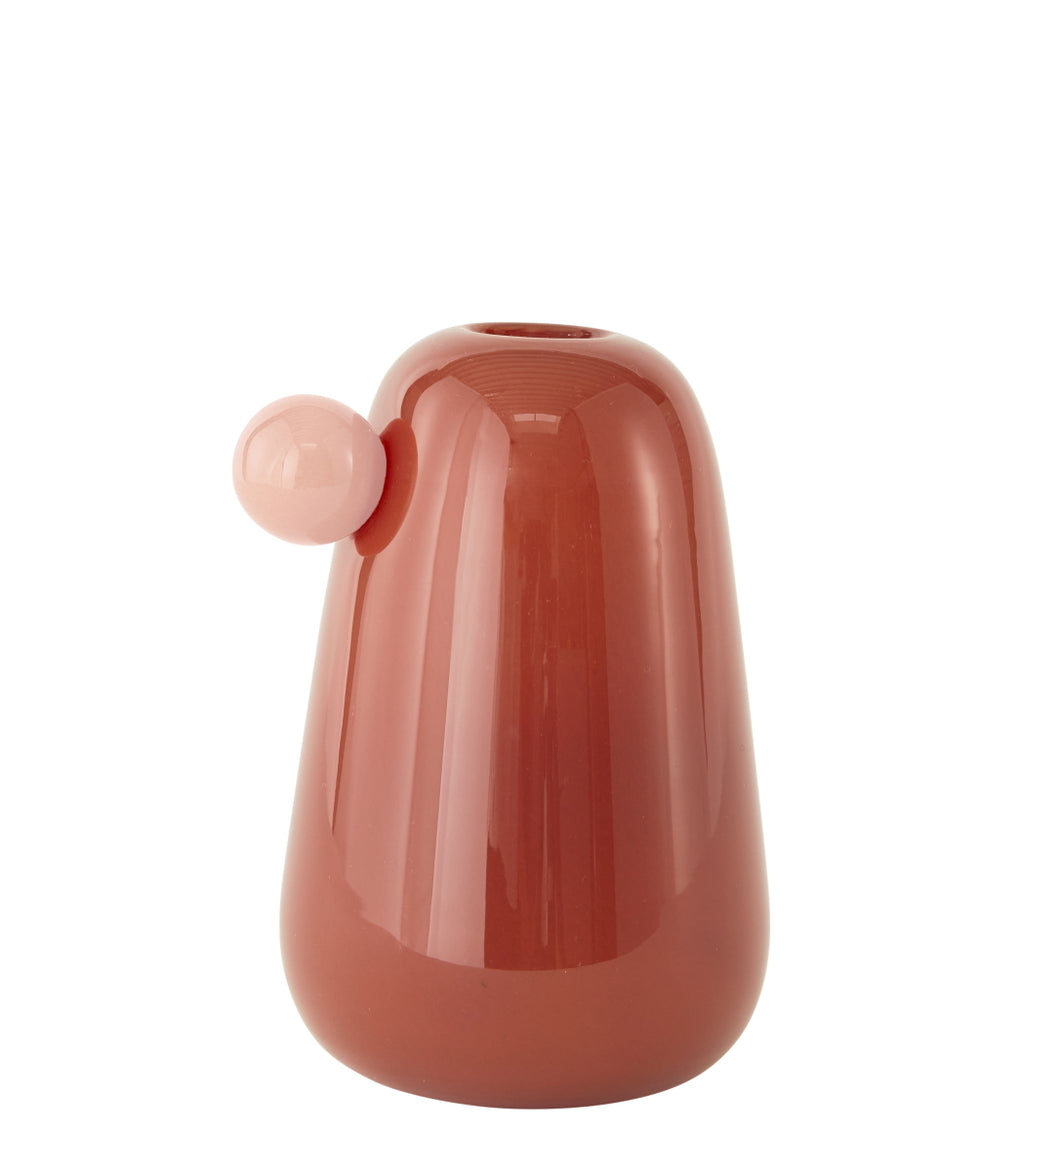 Inka Vase Small Nutmeg by OYOY